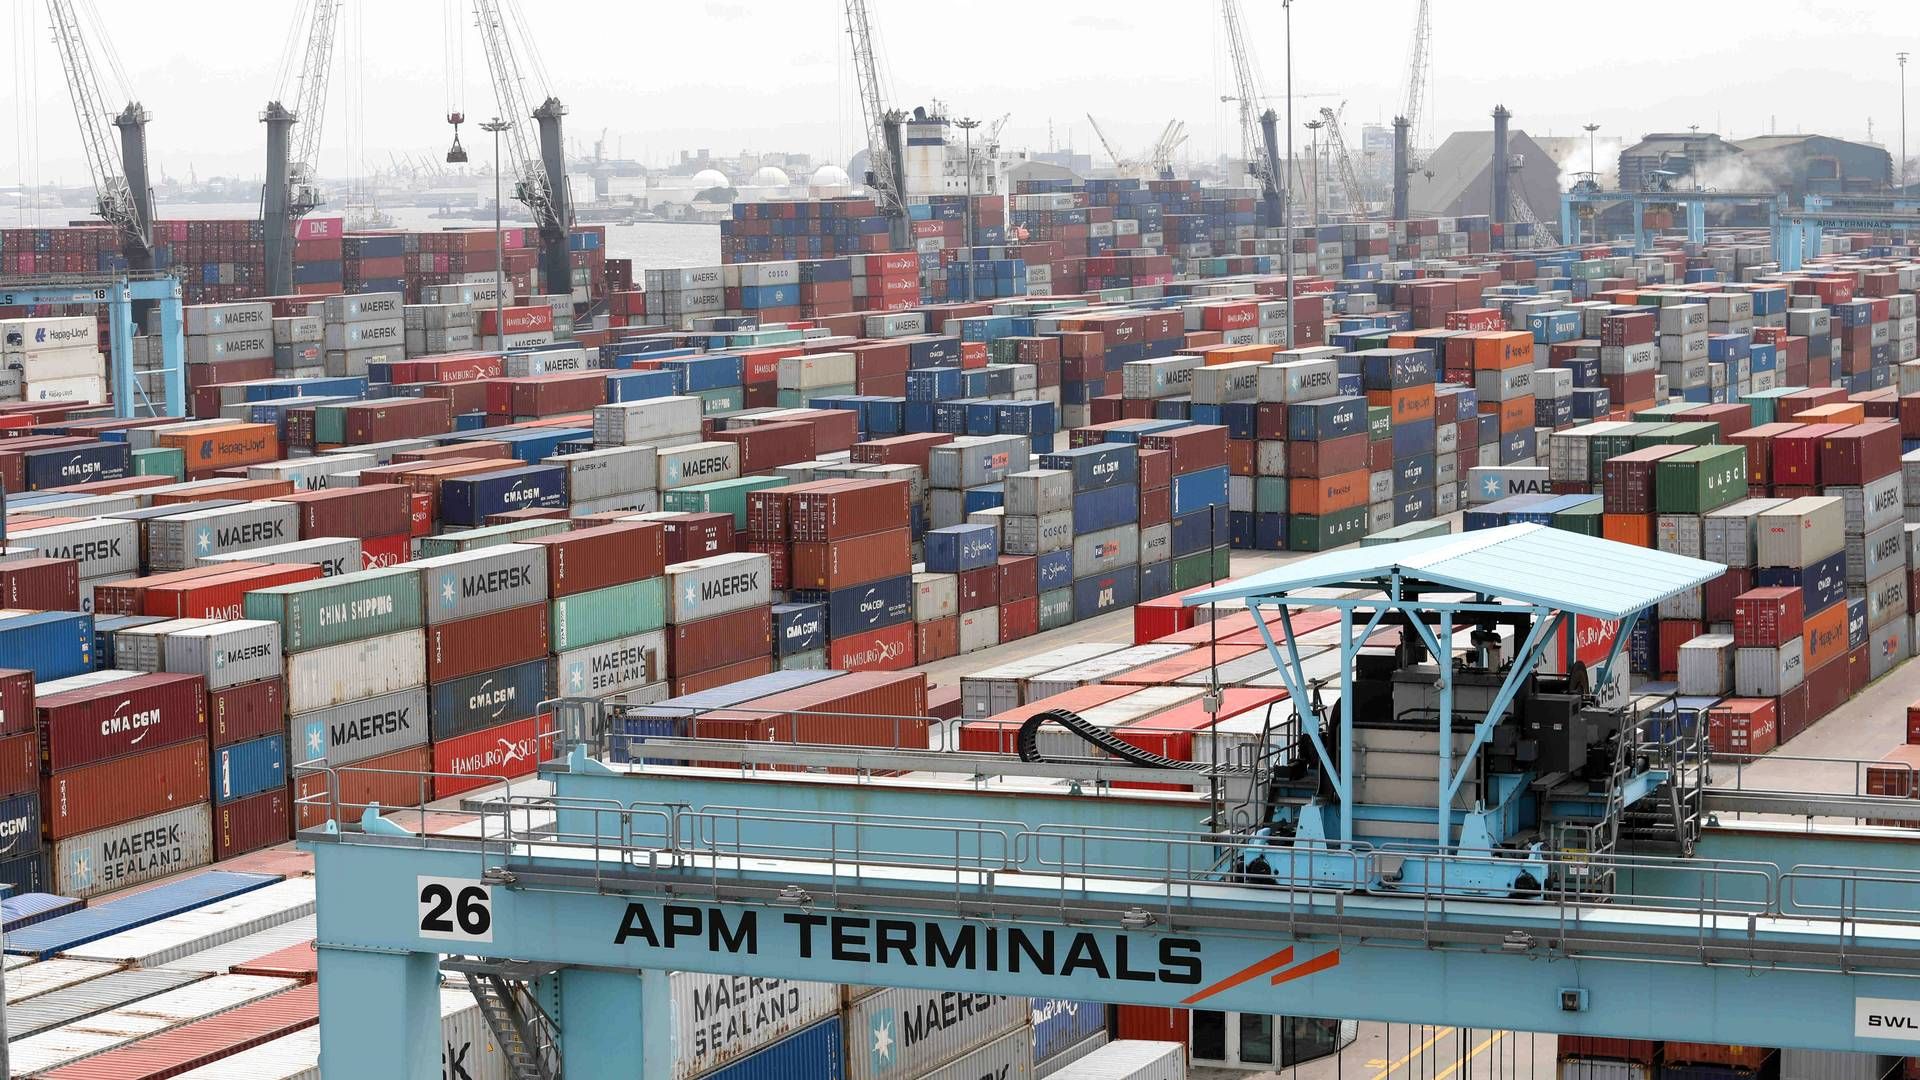 Maersks havneselskab, APM Terminals, har givet lønforhøjelse til sine ansatte i Monrovia i Liberia, efter en årelang strid om deres aflønning. | Foto: Temilade Adelaja/Reuters/Ritzau Scanpix